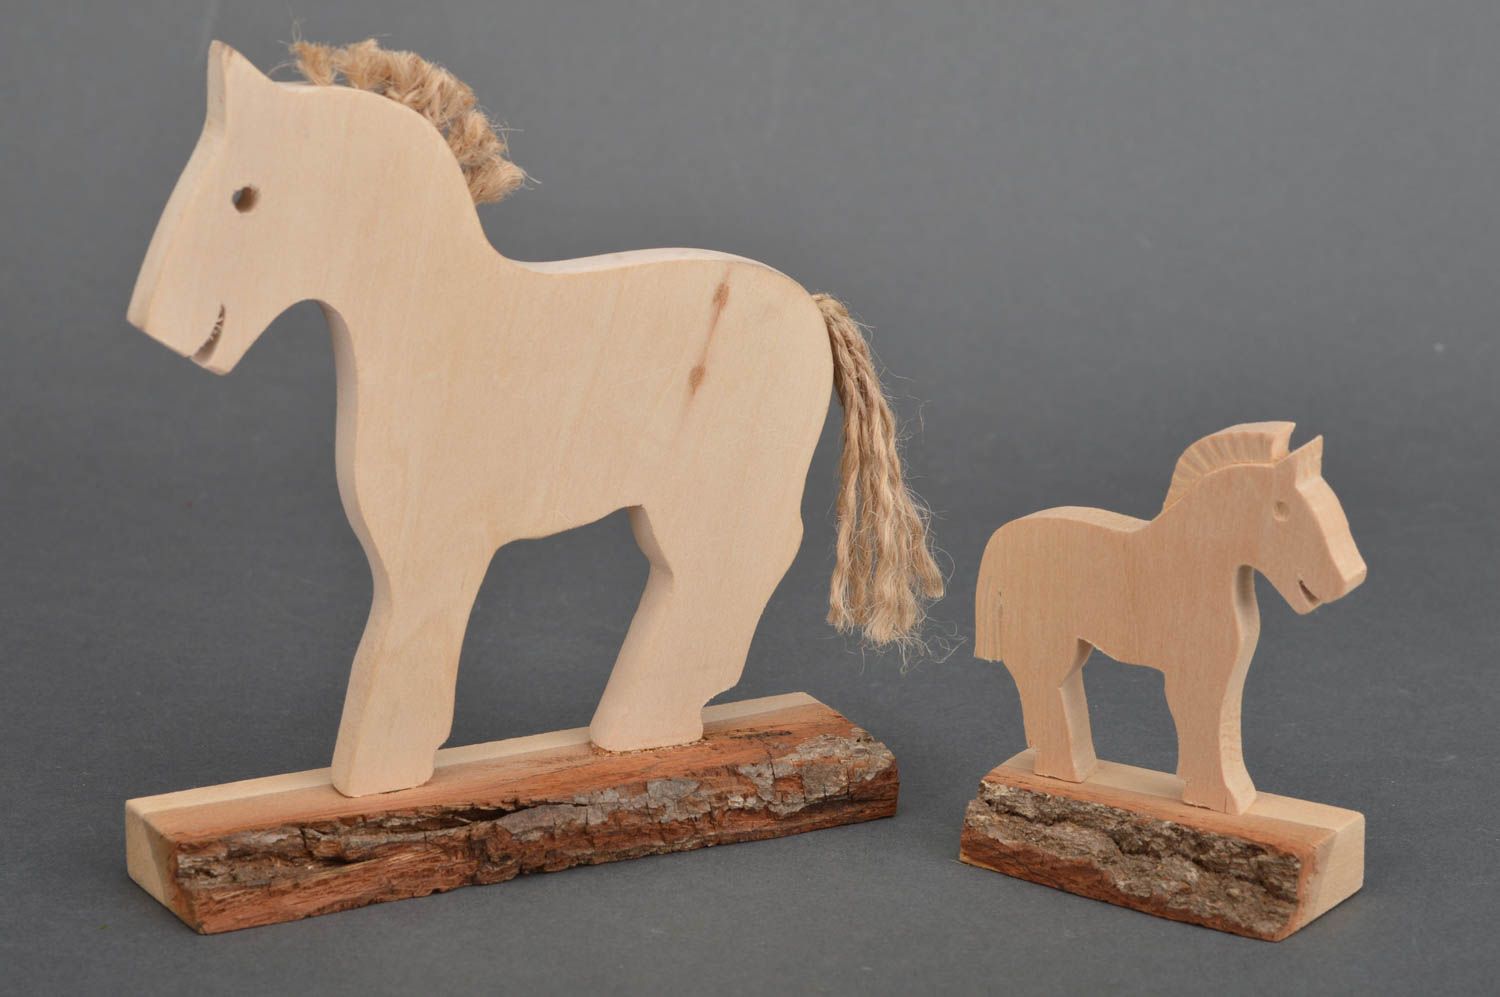 Набор деревянных лошадок для детей под заготовку или декор дома 2 штуки фото 2